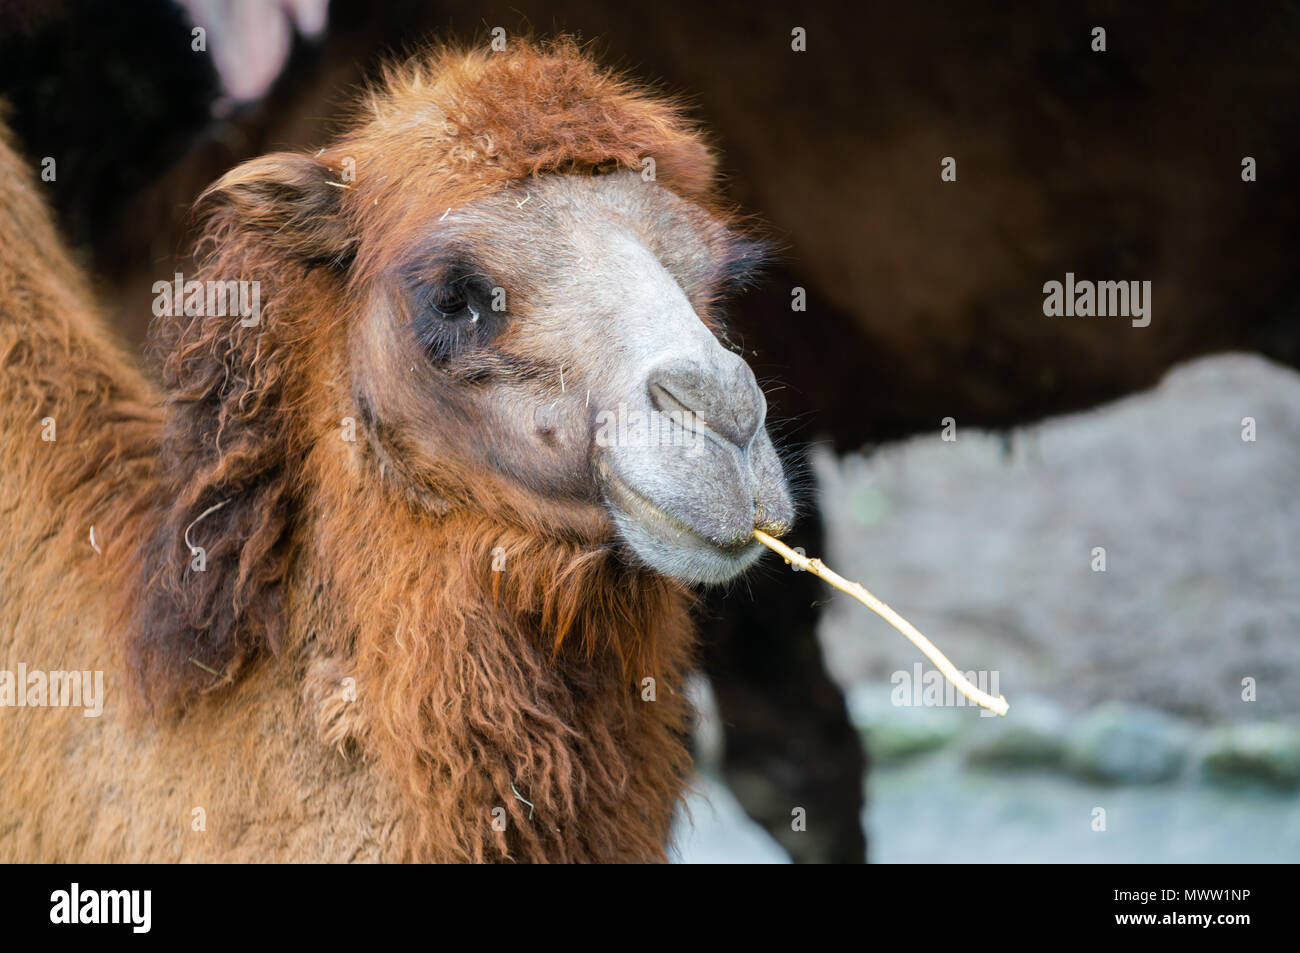 Ritratto di un cammello Bactrian o Camelus bactrianus masticare un bastone Foto Stock